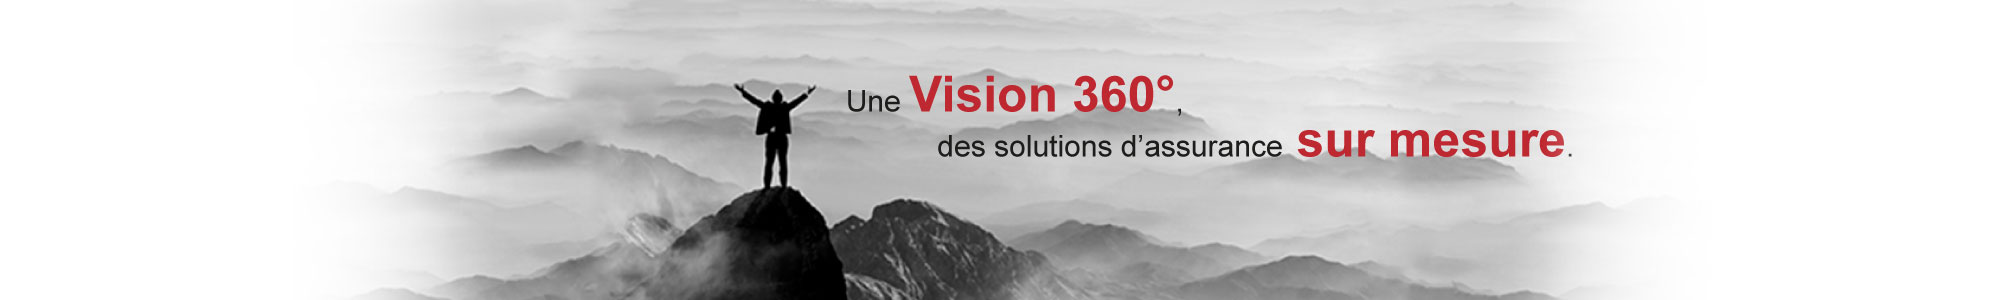 Une vision 360 degrés, des solutions d'assurance sur mesure.